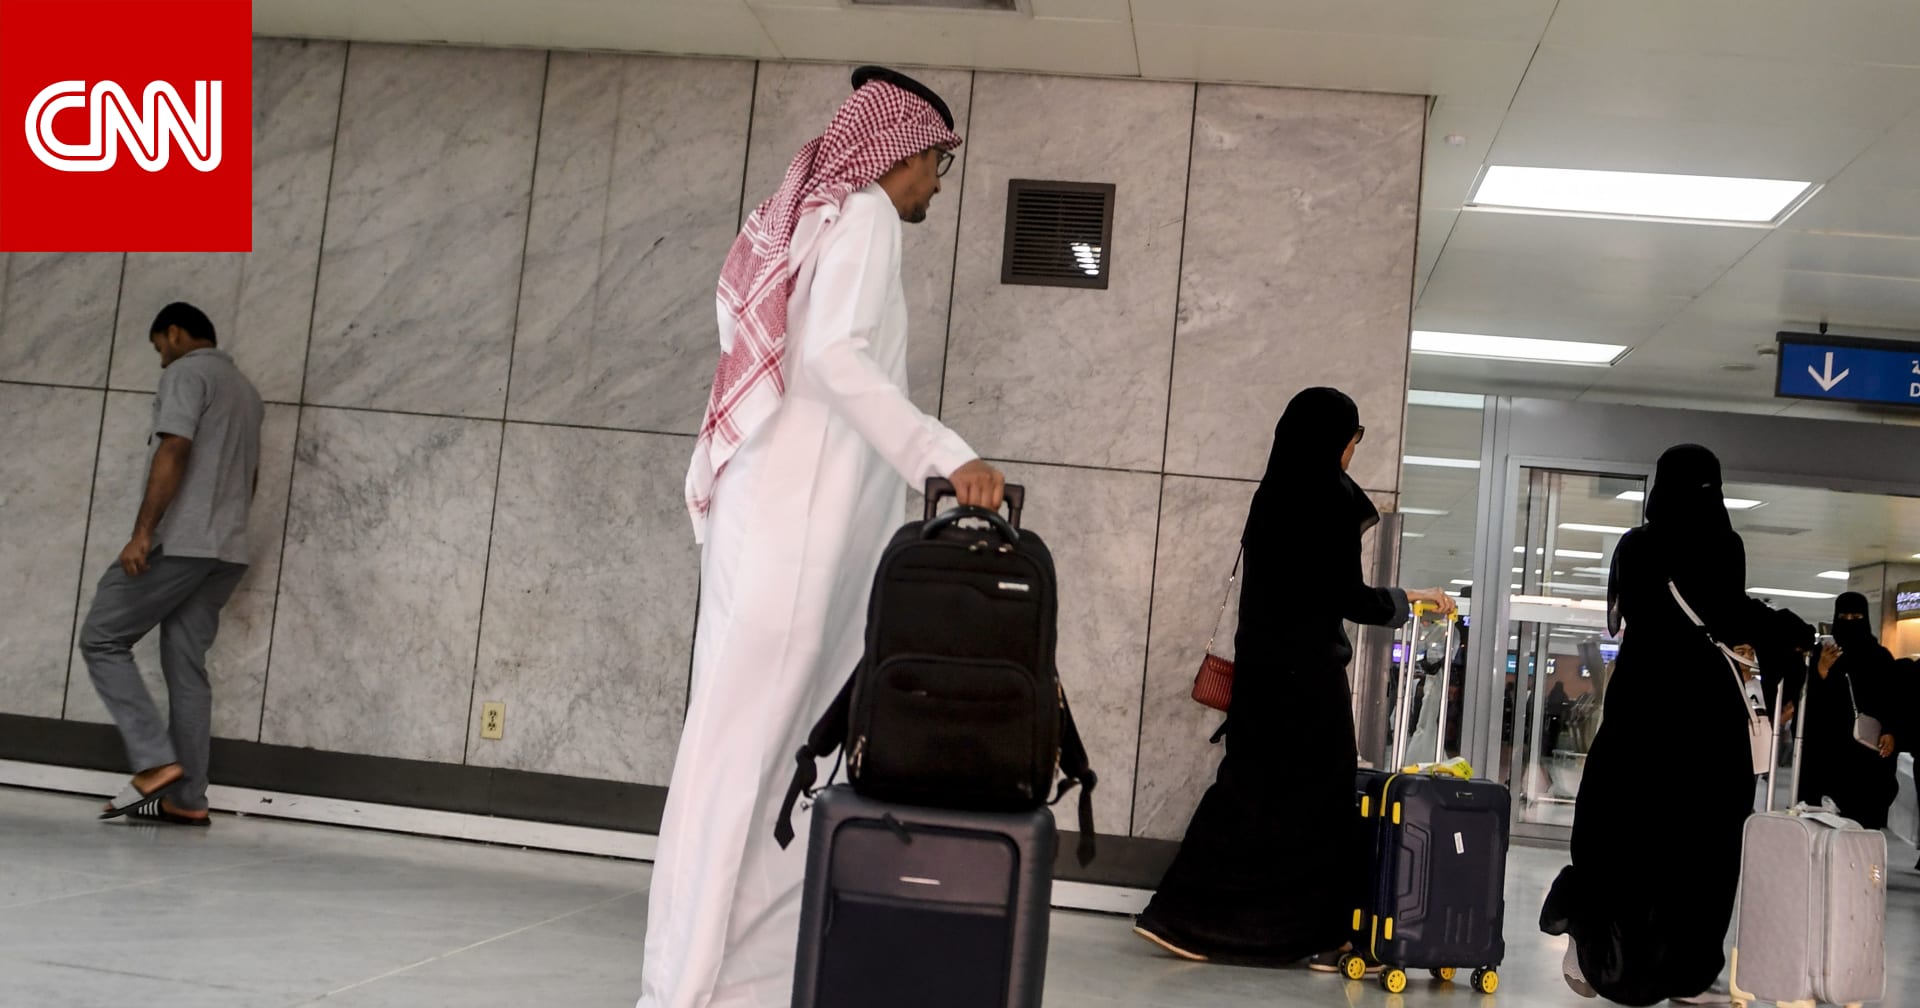 السعودية تعلق سفر المقيمين والمواطنين مؤقتا والرحلات لـ13 دولة جديدة بسبب فيروس كورونا - CNN Arabic